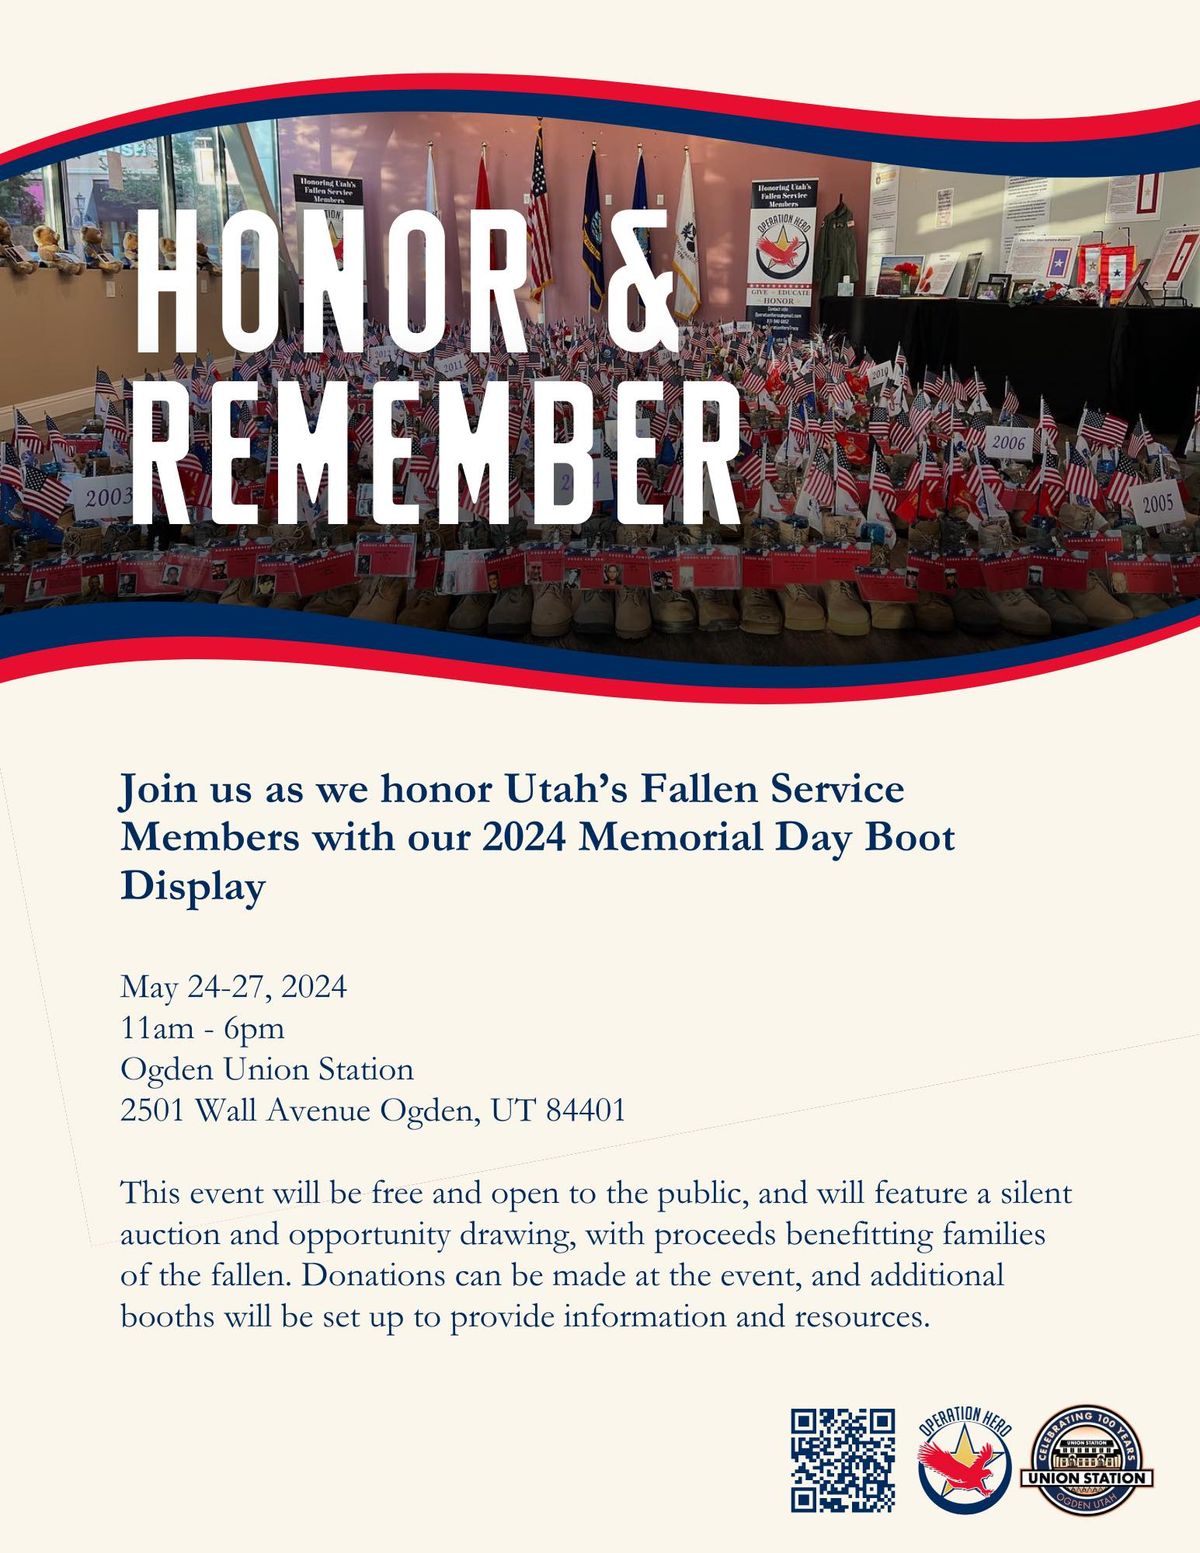 Honor and Remember Utah\u2019s Fallen Service Members